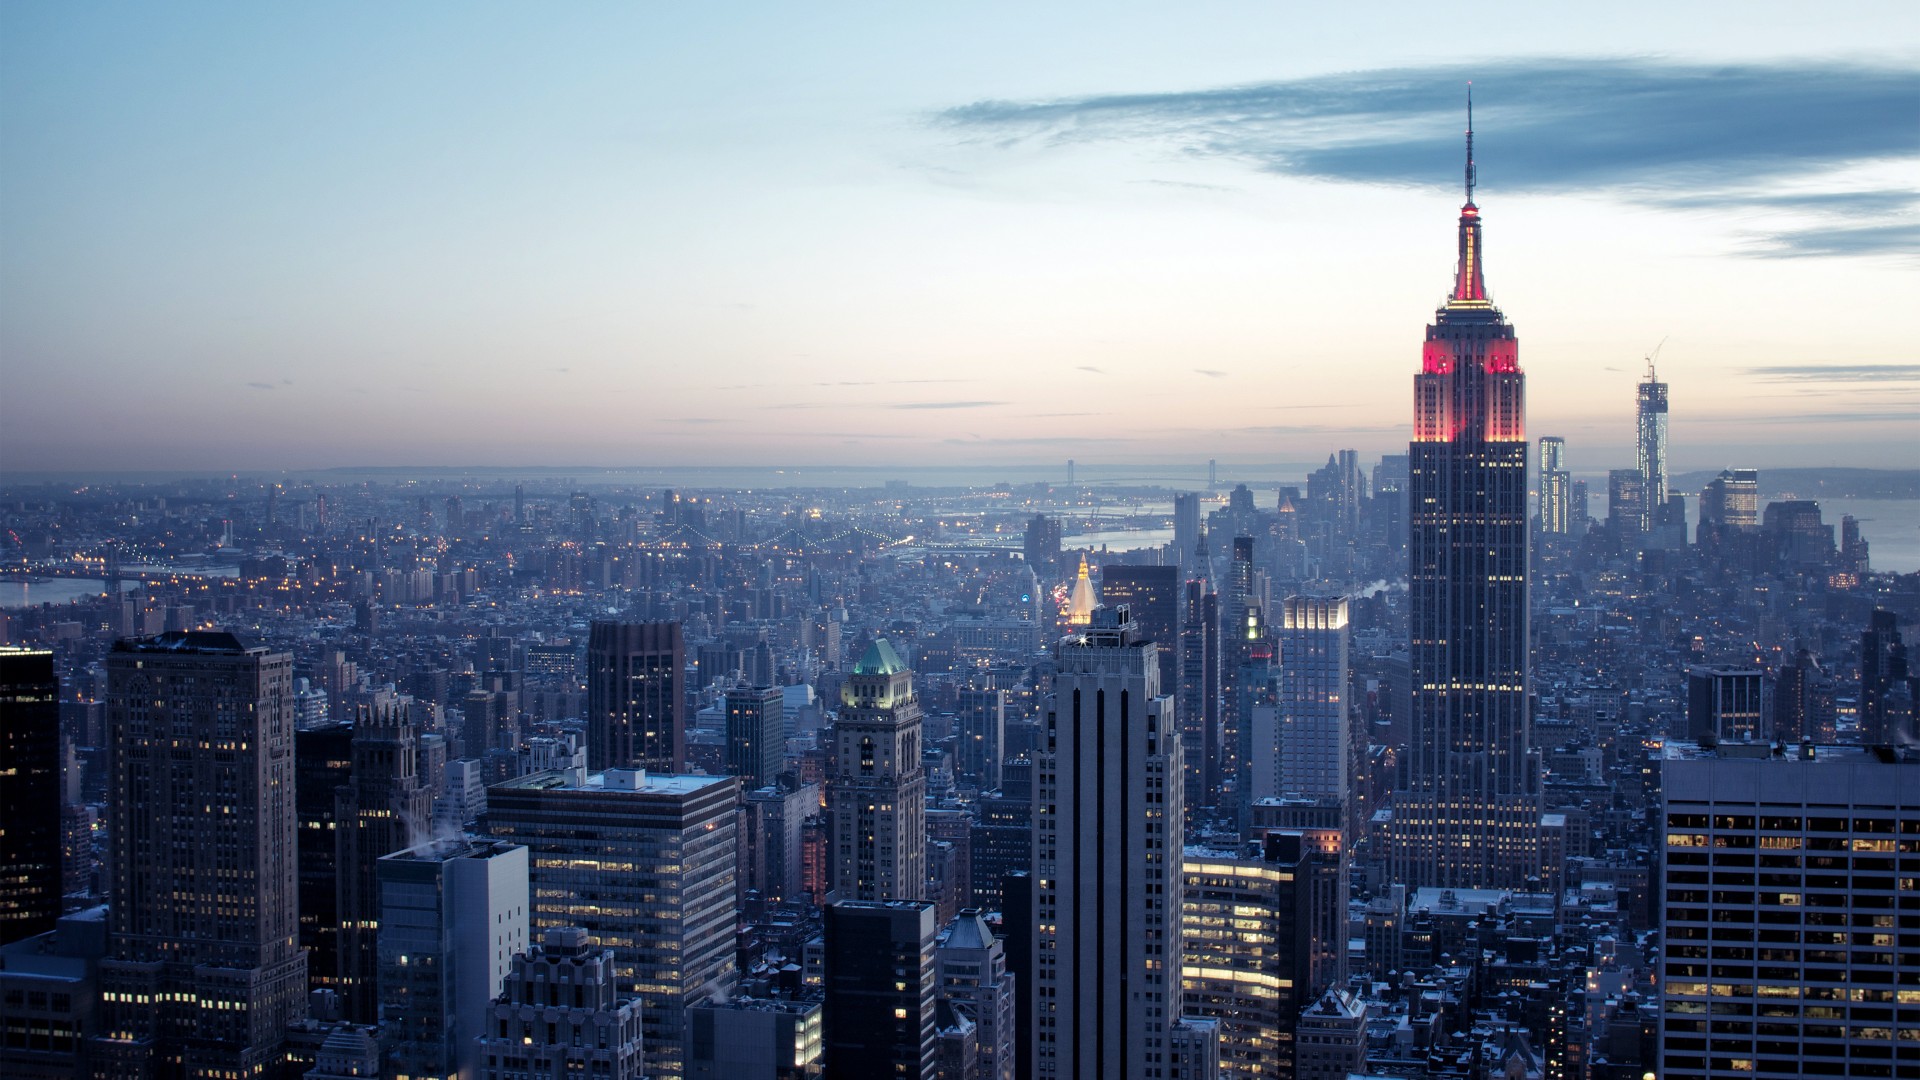 нью-йорк, нью йорк, рокфеллер центр, небо, рассвет, свет, синий, сумерки, New York, Rockefeller Center, sky, sunrise, light, blue, twilight (horizontal)